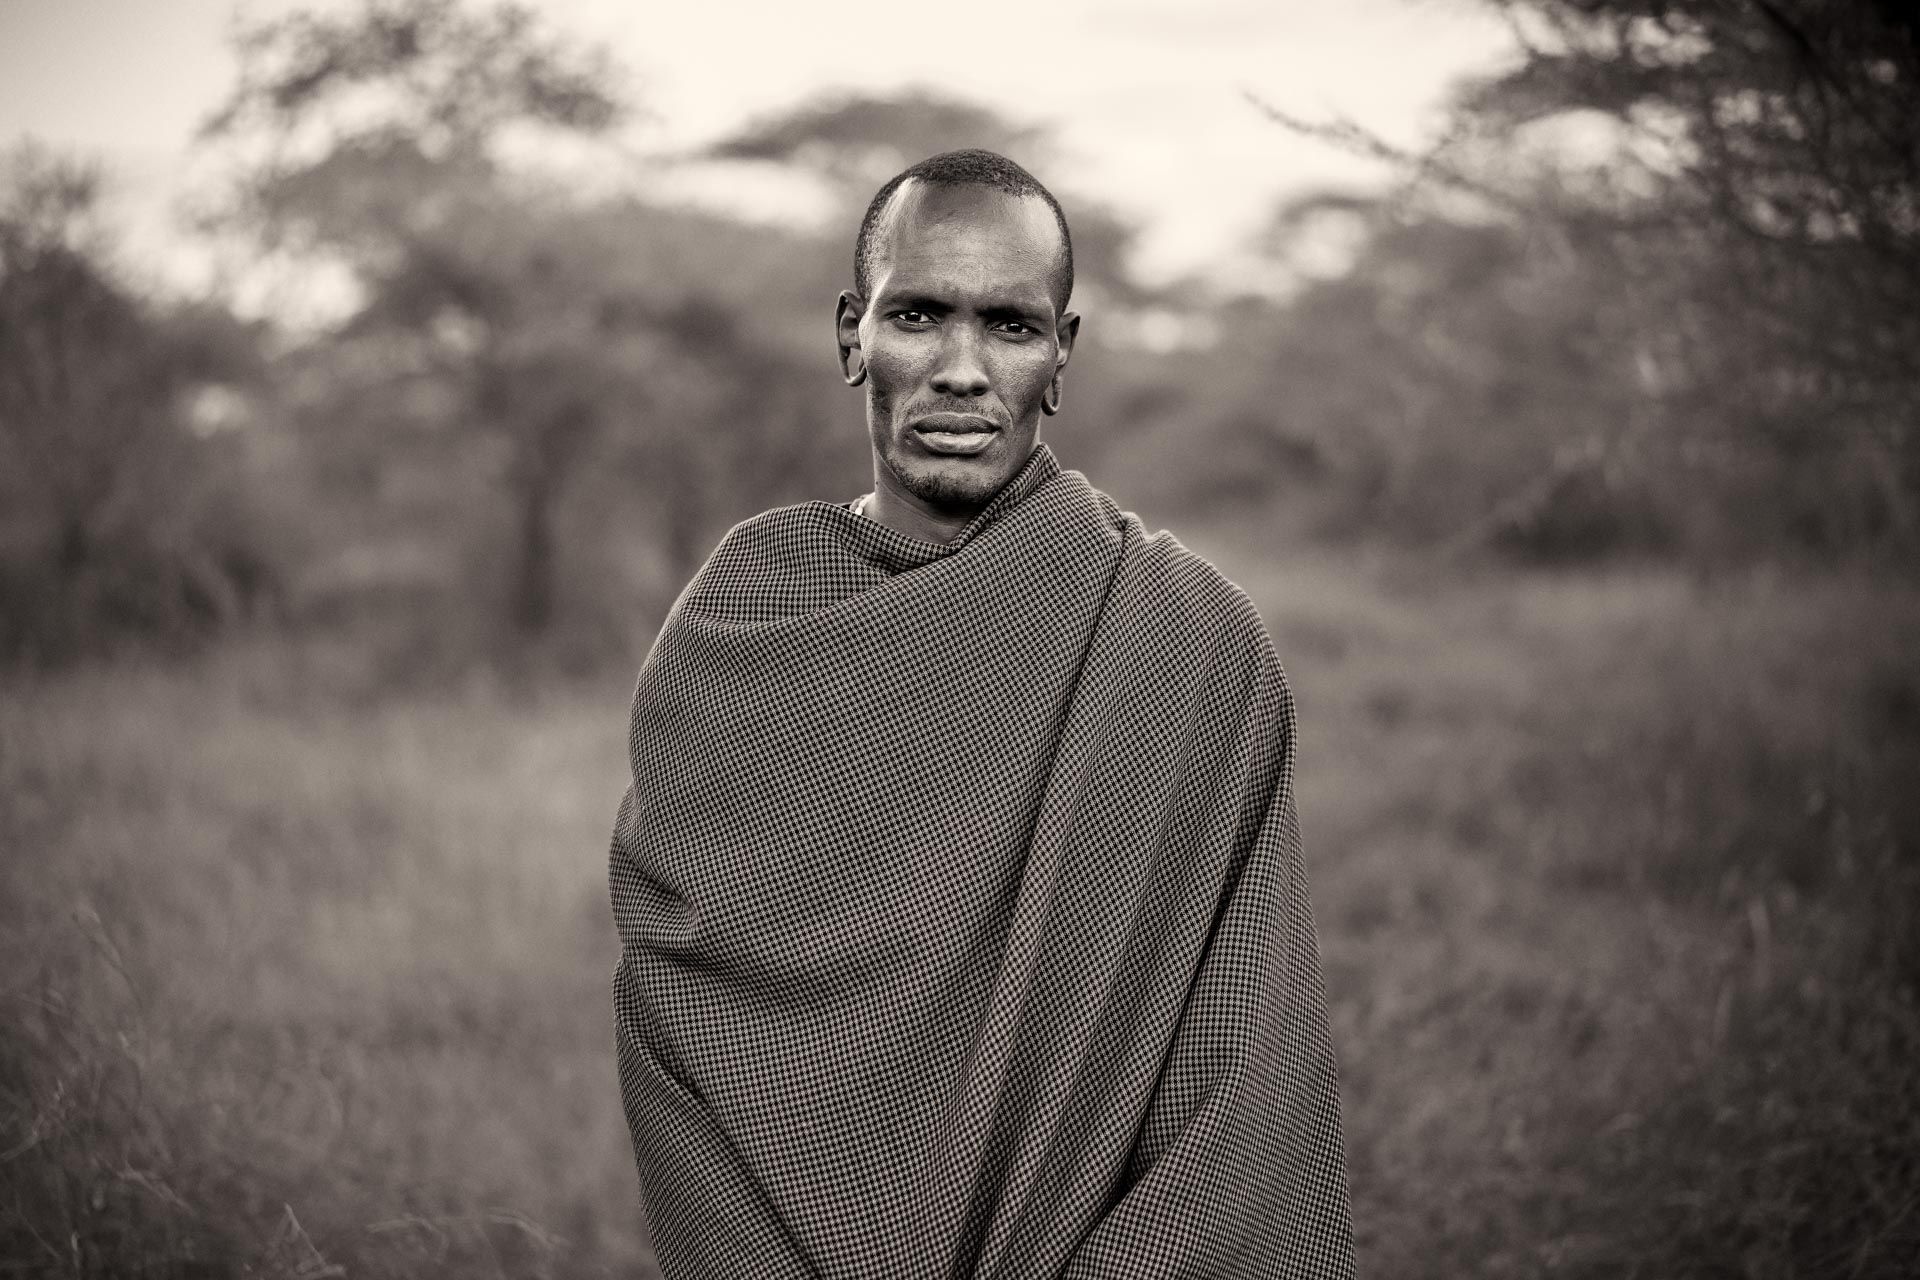 The Maasai People